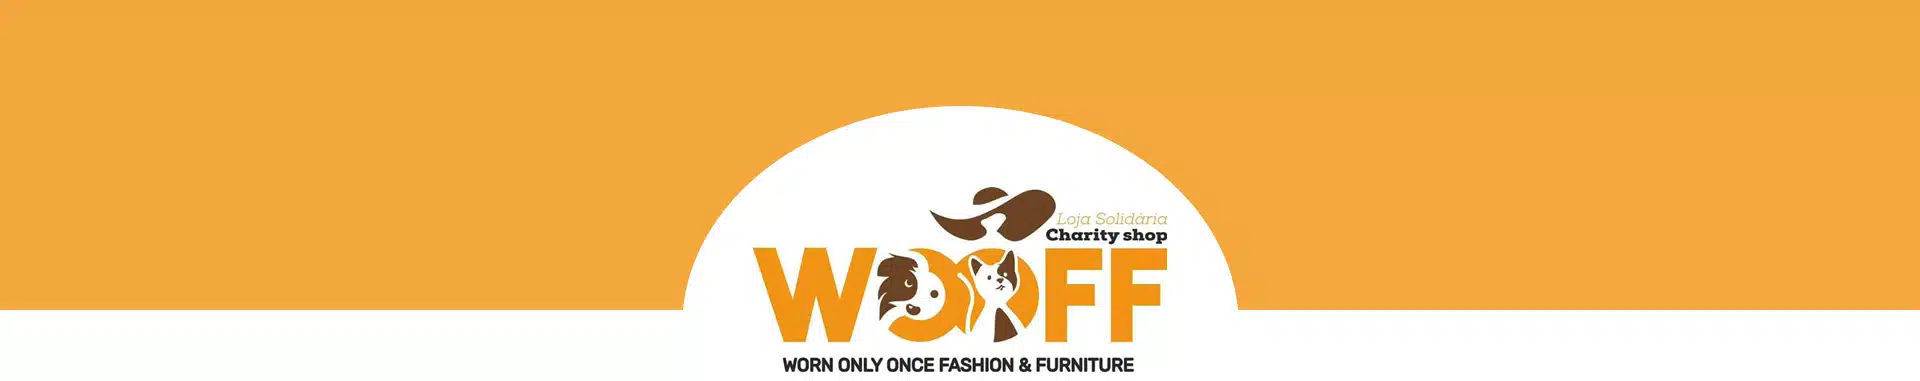 WOOFF Charity Shop